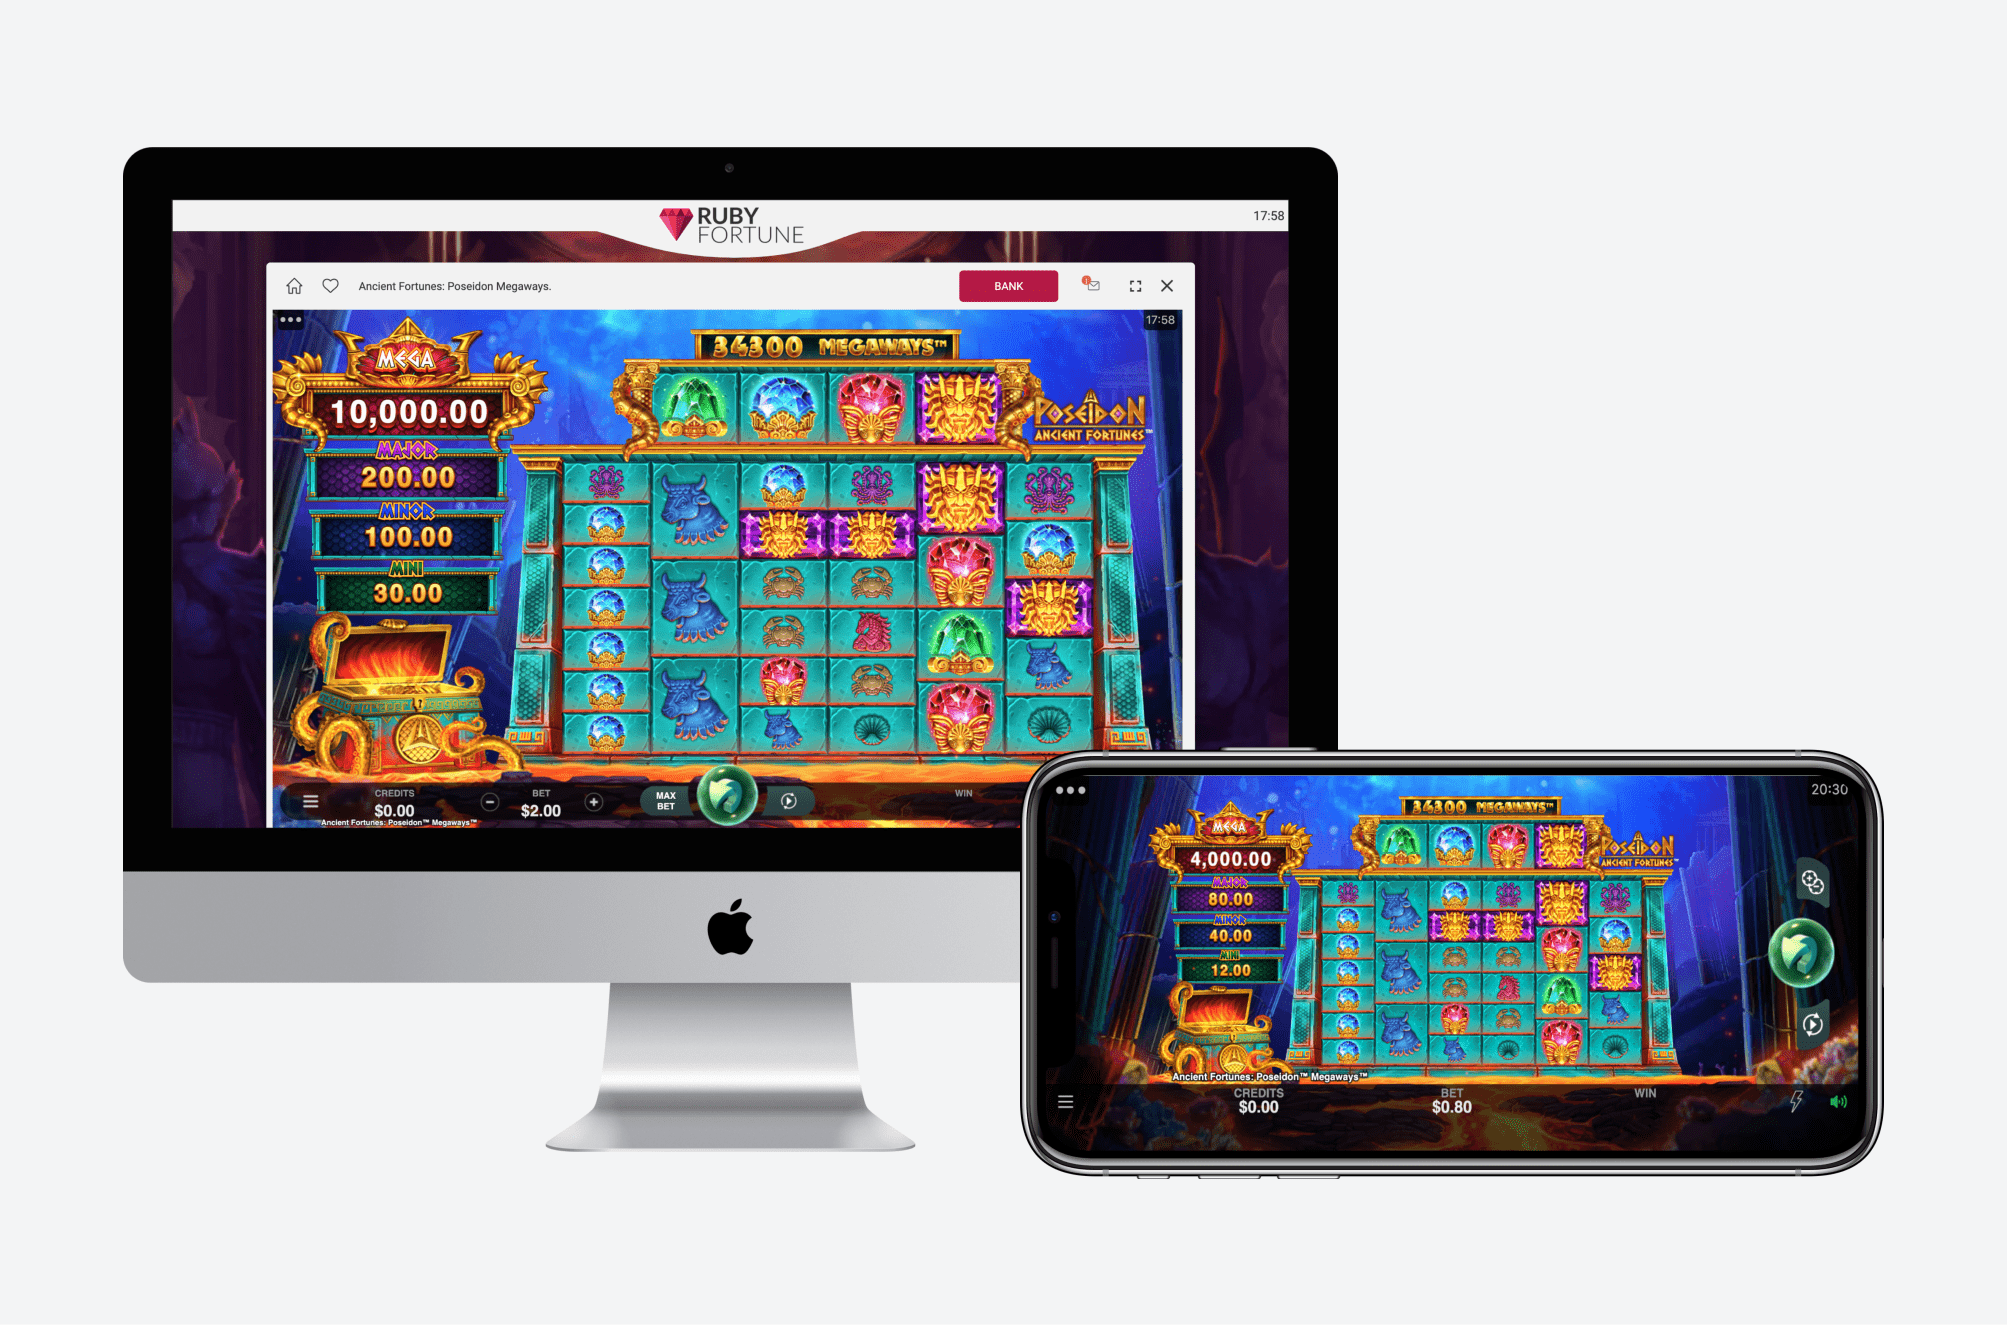 Ruby fortune app & mobile gambling